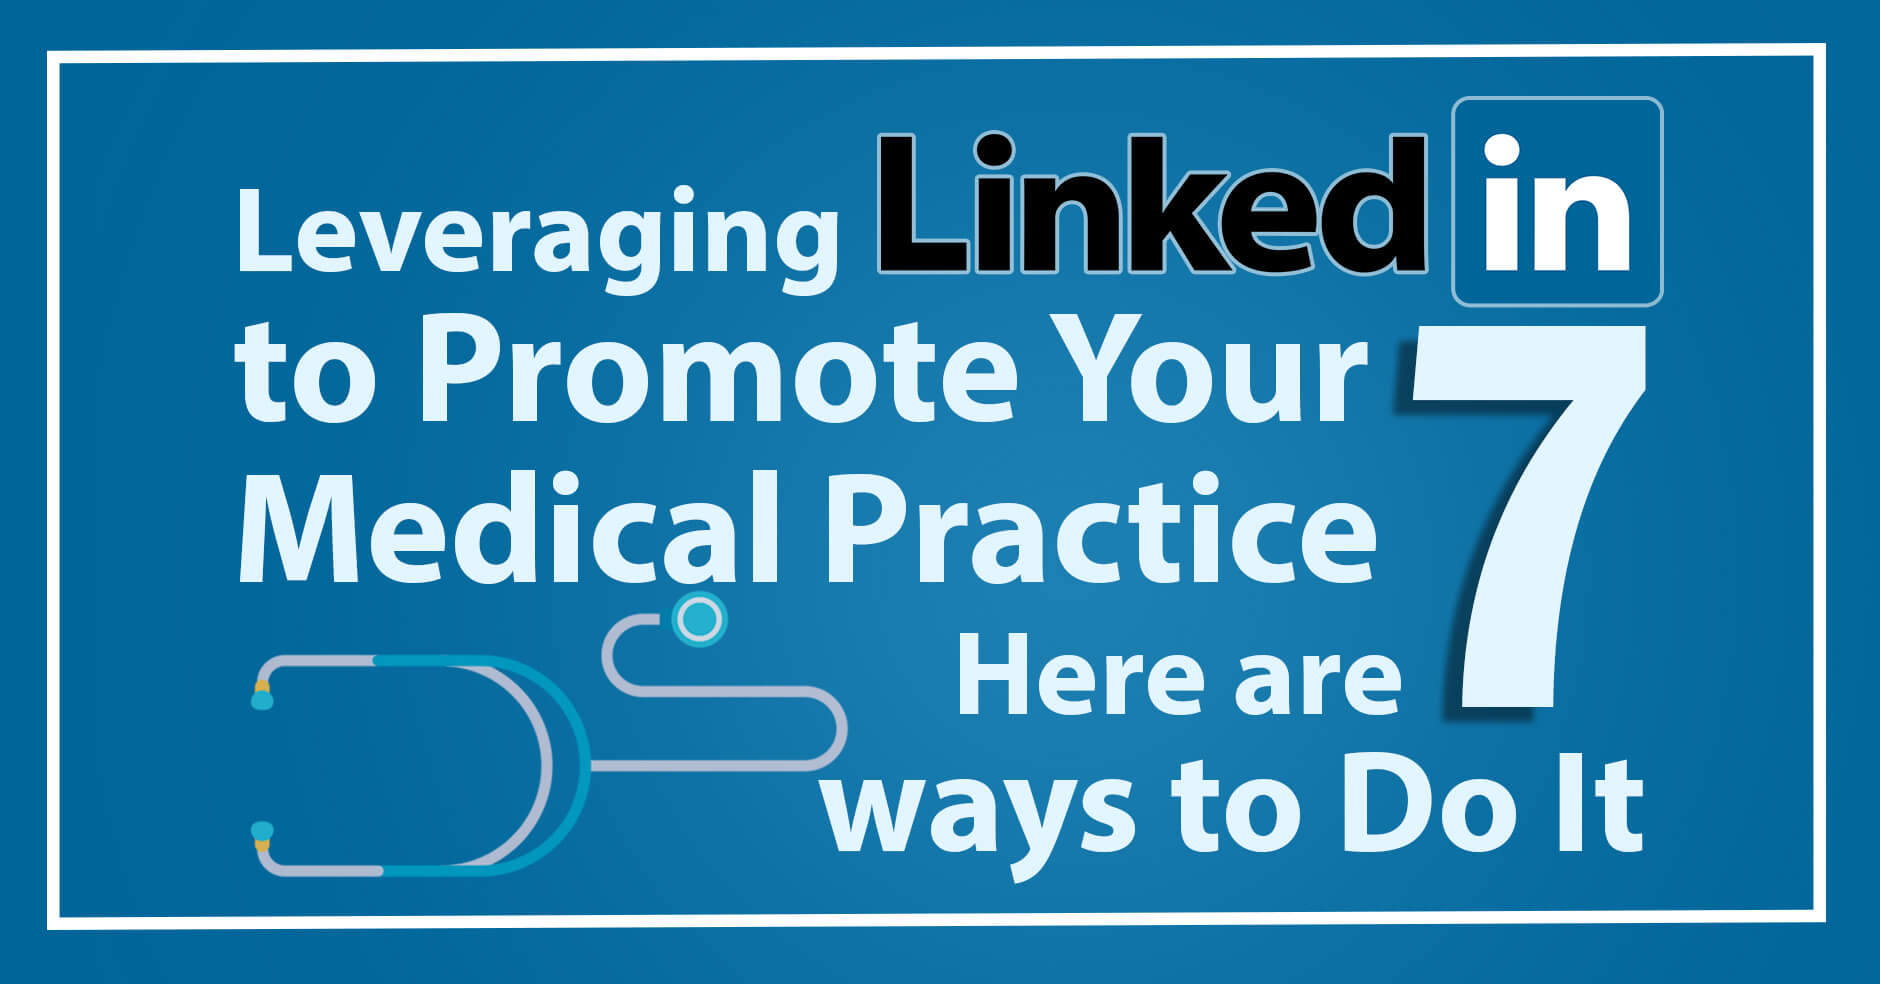 Leveraging-linkedin-for-medical-practice